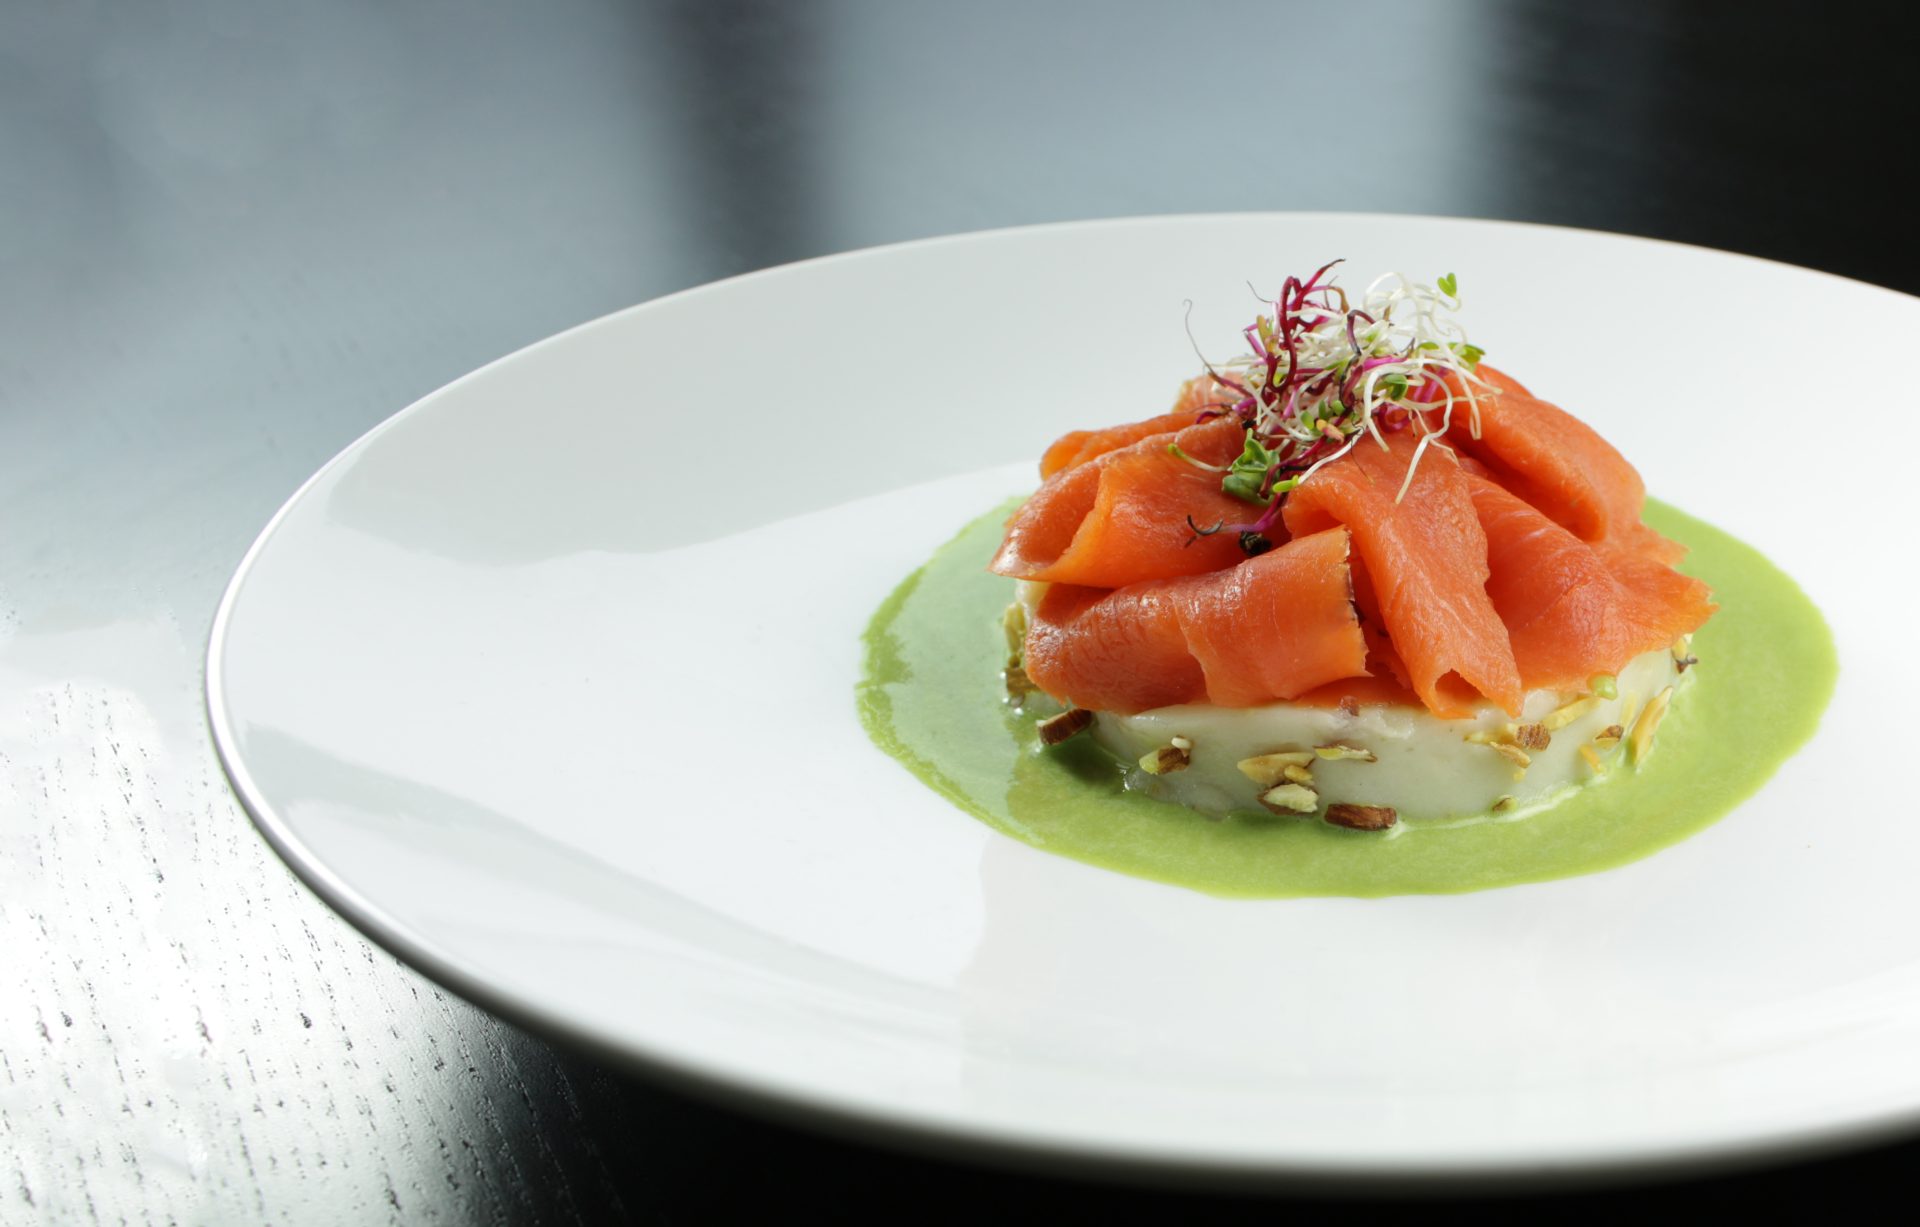 Foodlab per le feste propone un menu con protagonista il salmone - Sapori News 